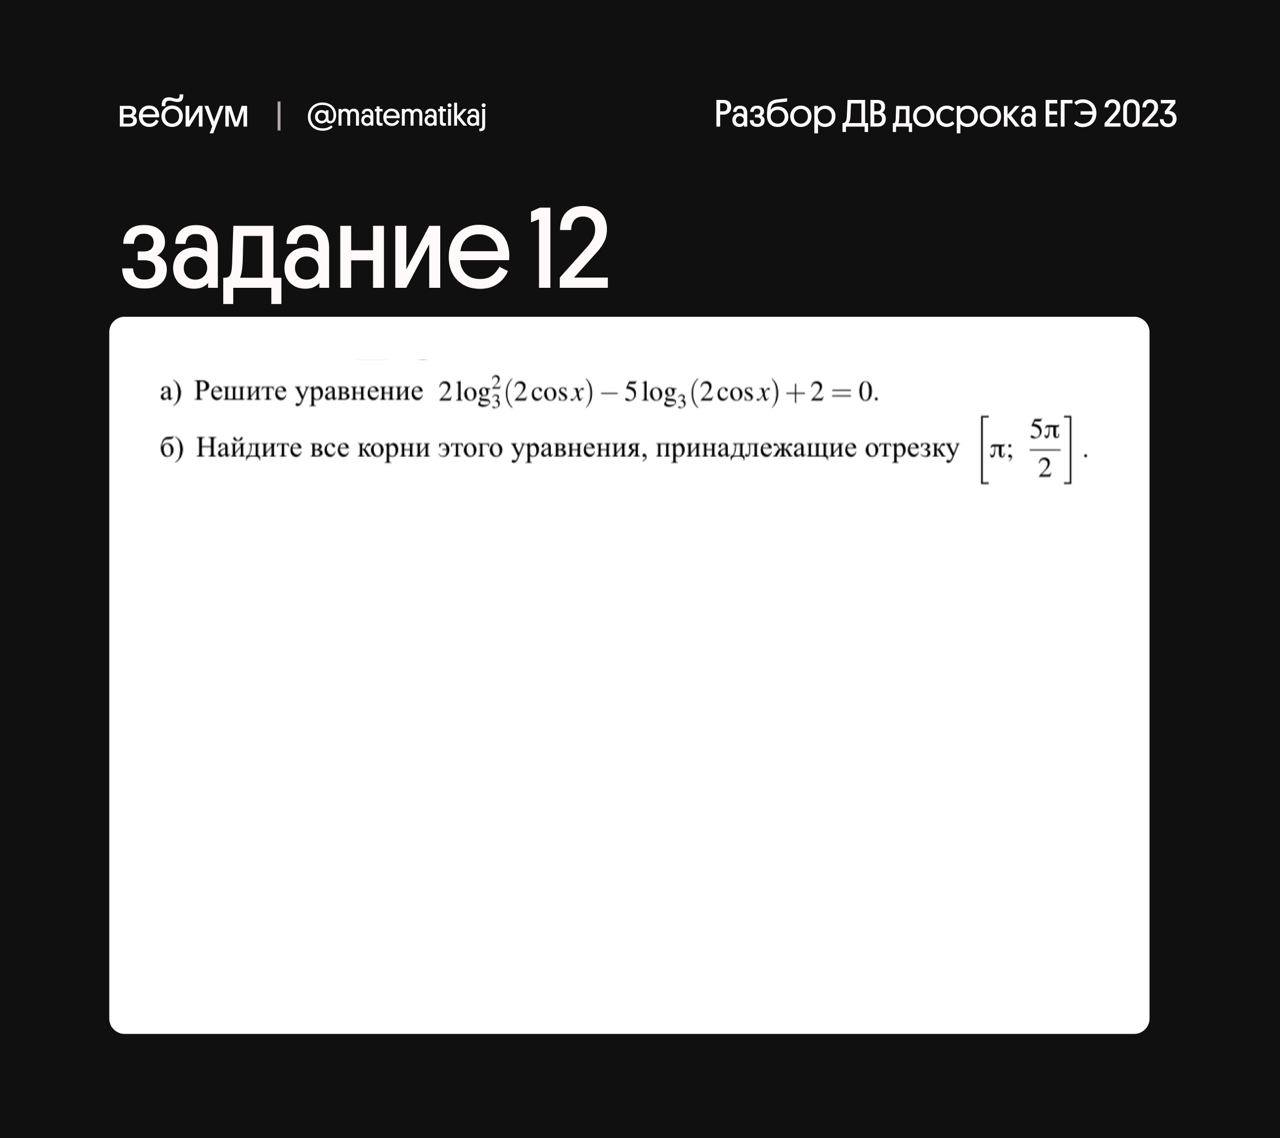 Скачать новый тик ток на андроид 2023 через телеграмм бесплатно русском фото 34